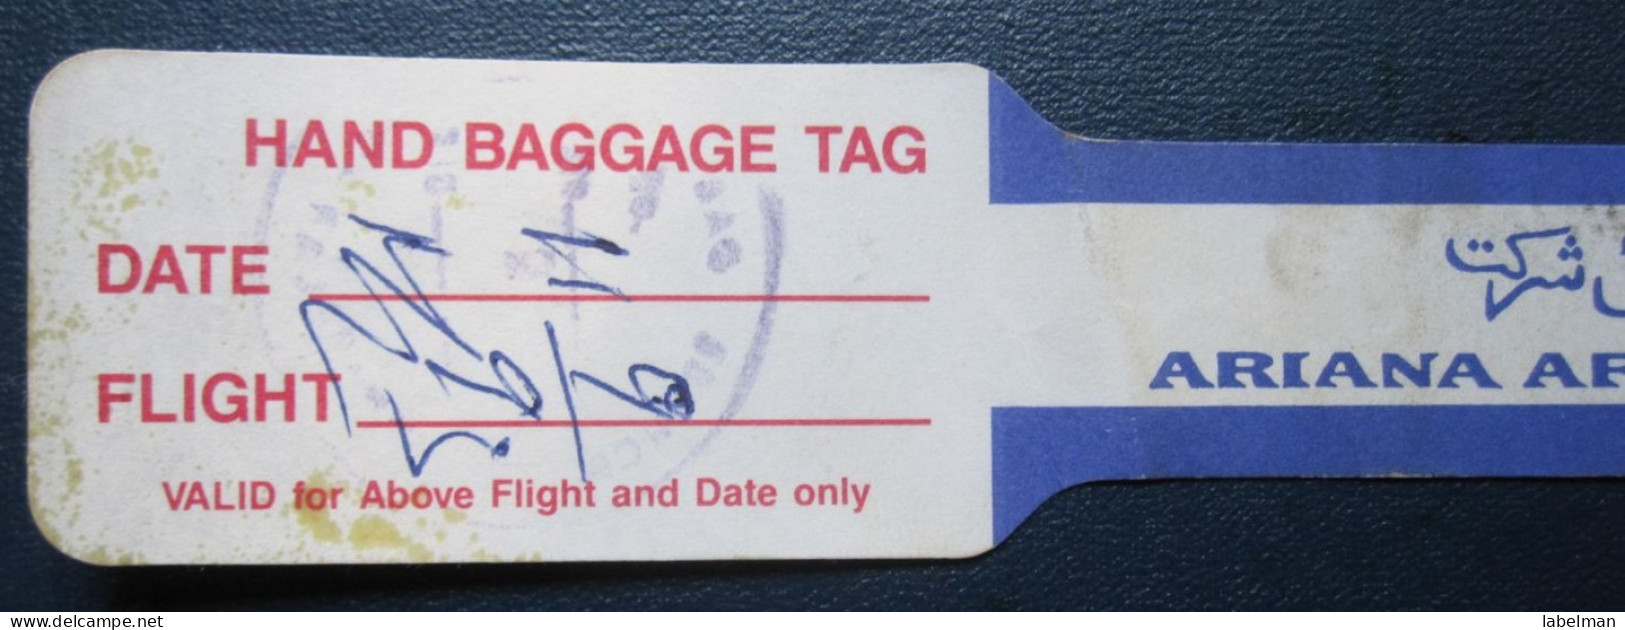 ARIANA AFGHAN AFGHANISTAN CARD WELCOME TICKET AIRWAYS AIRLINE STICKER LABEL TAG LUGGAGE BUGGAGE PLANE AIRCRAFT AIRPORT - Aufklebschilder Und Gepäckbeschriftung